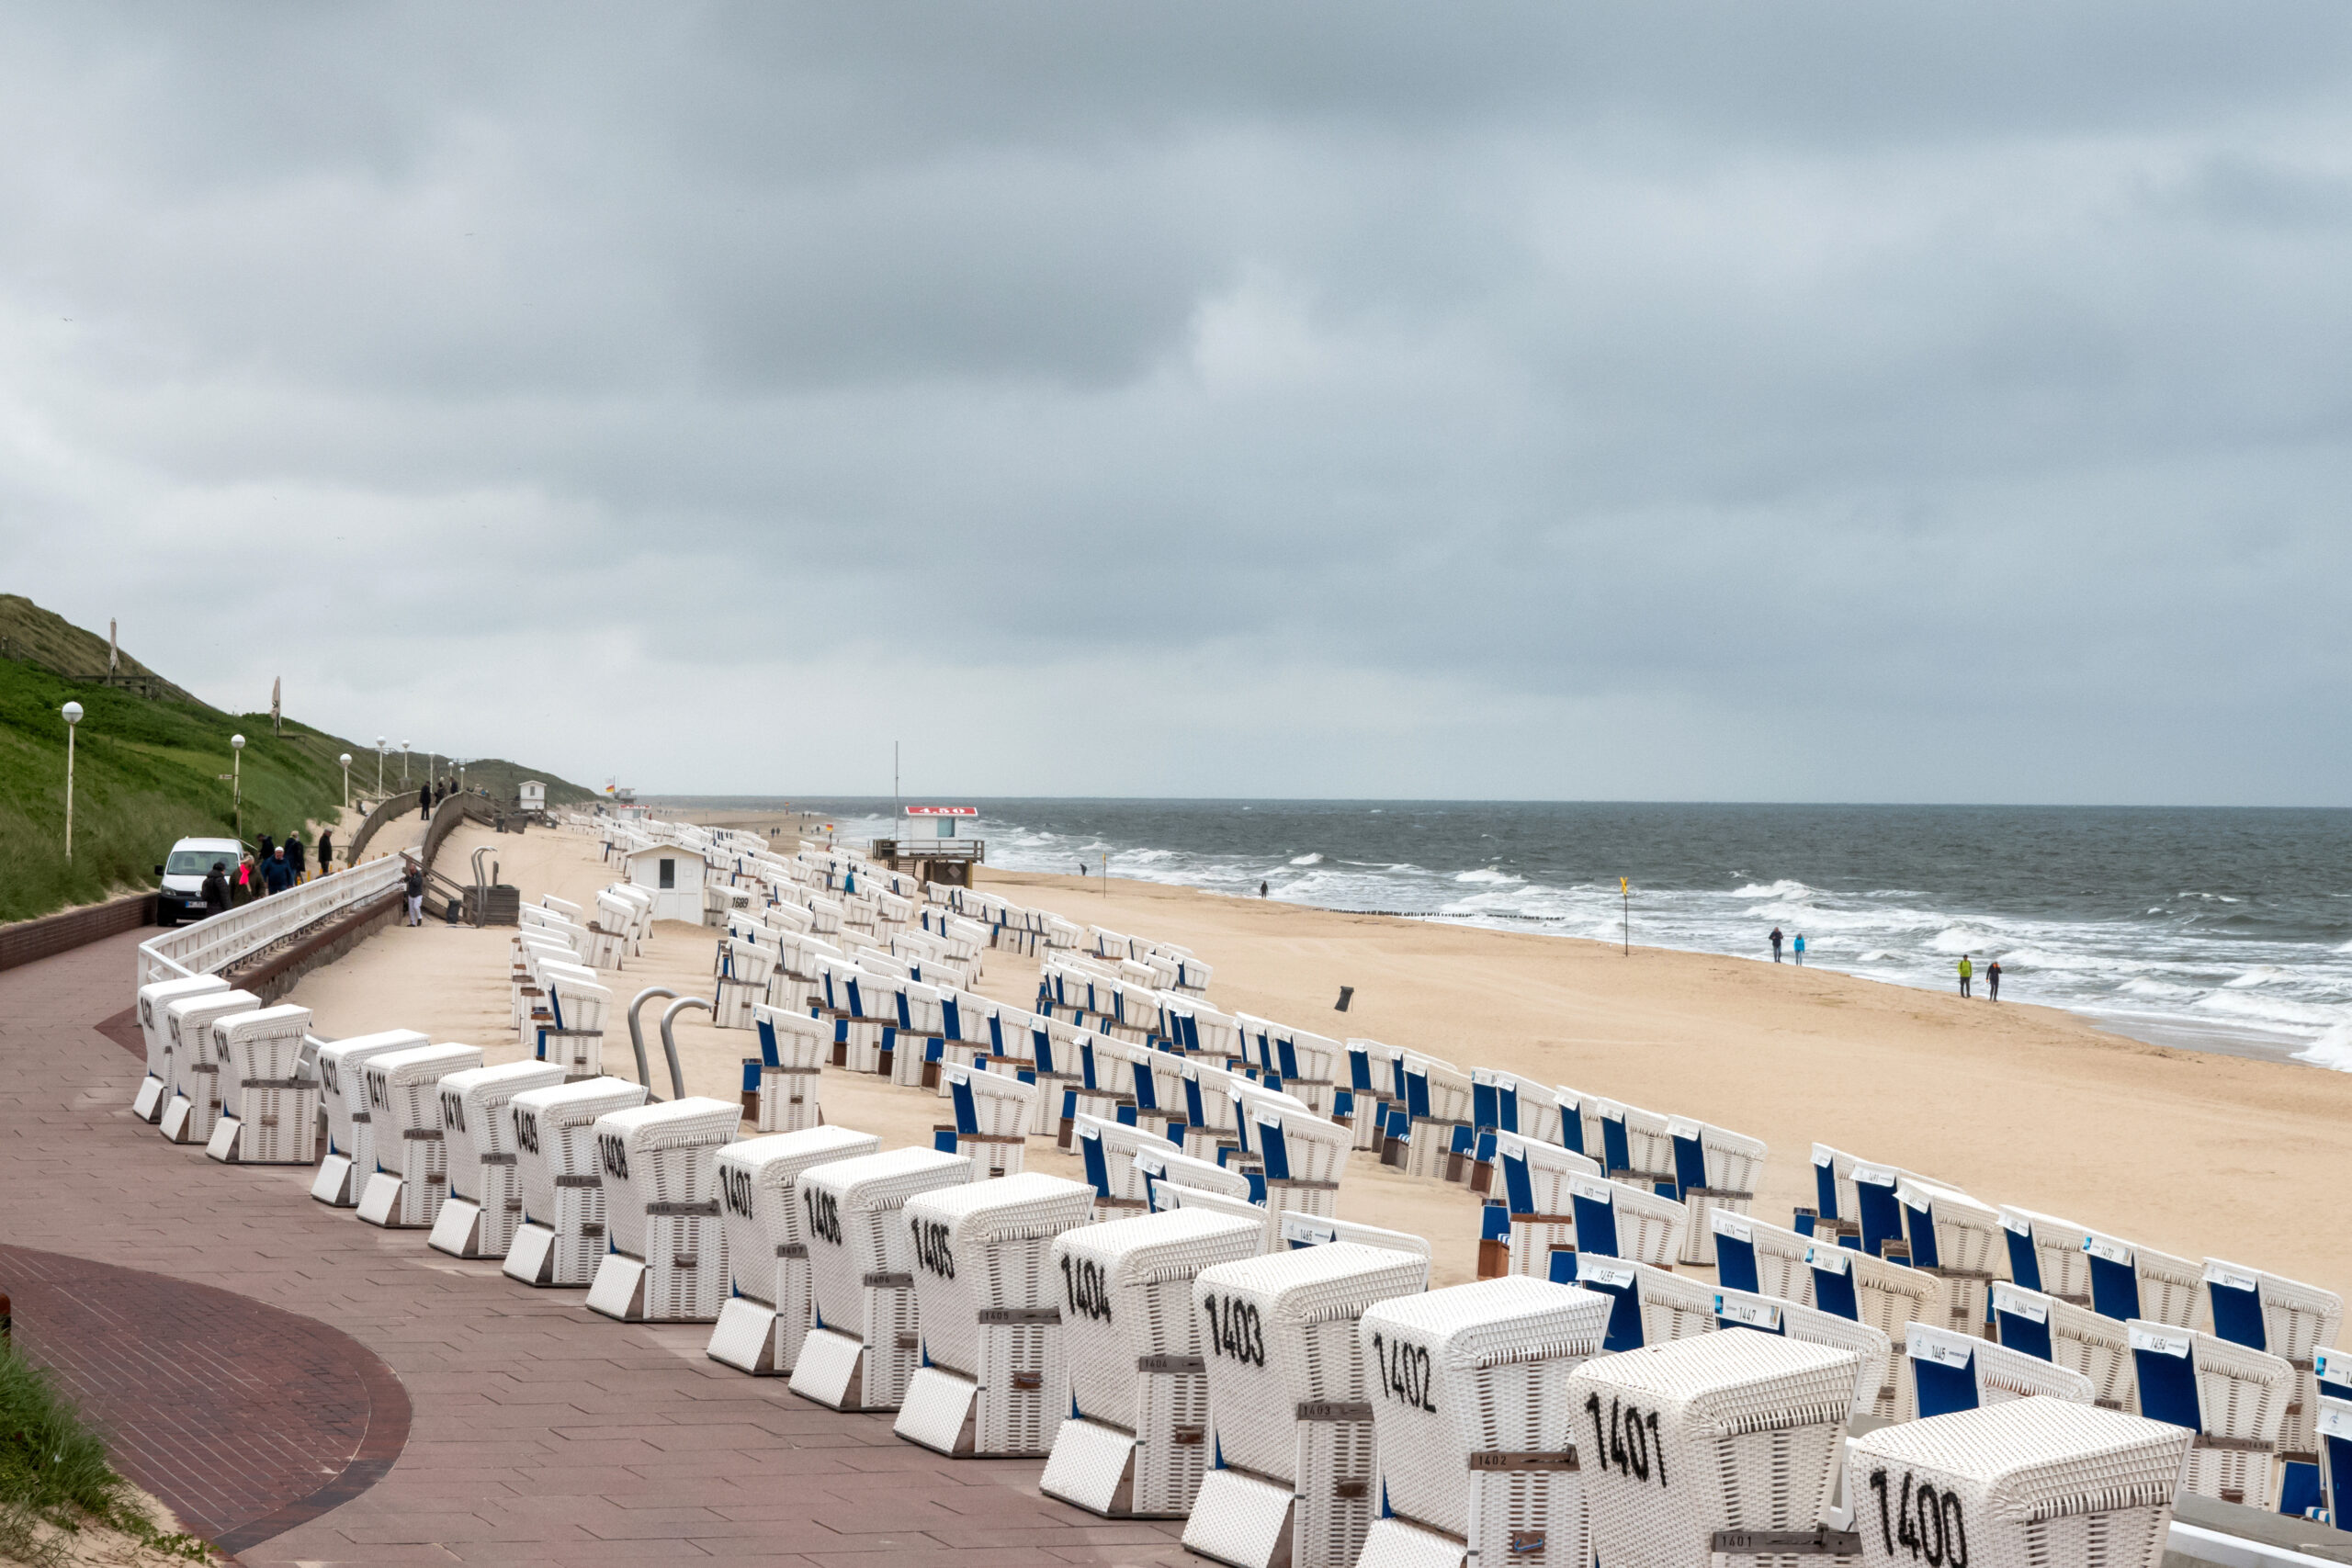 Strandkörbe stehen bei bewölktem Himmel am Strand von Westerland.